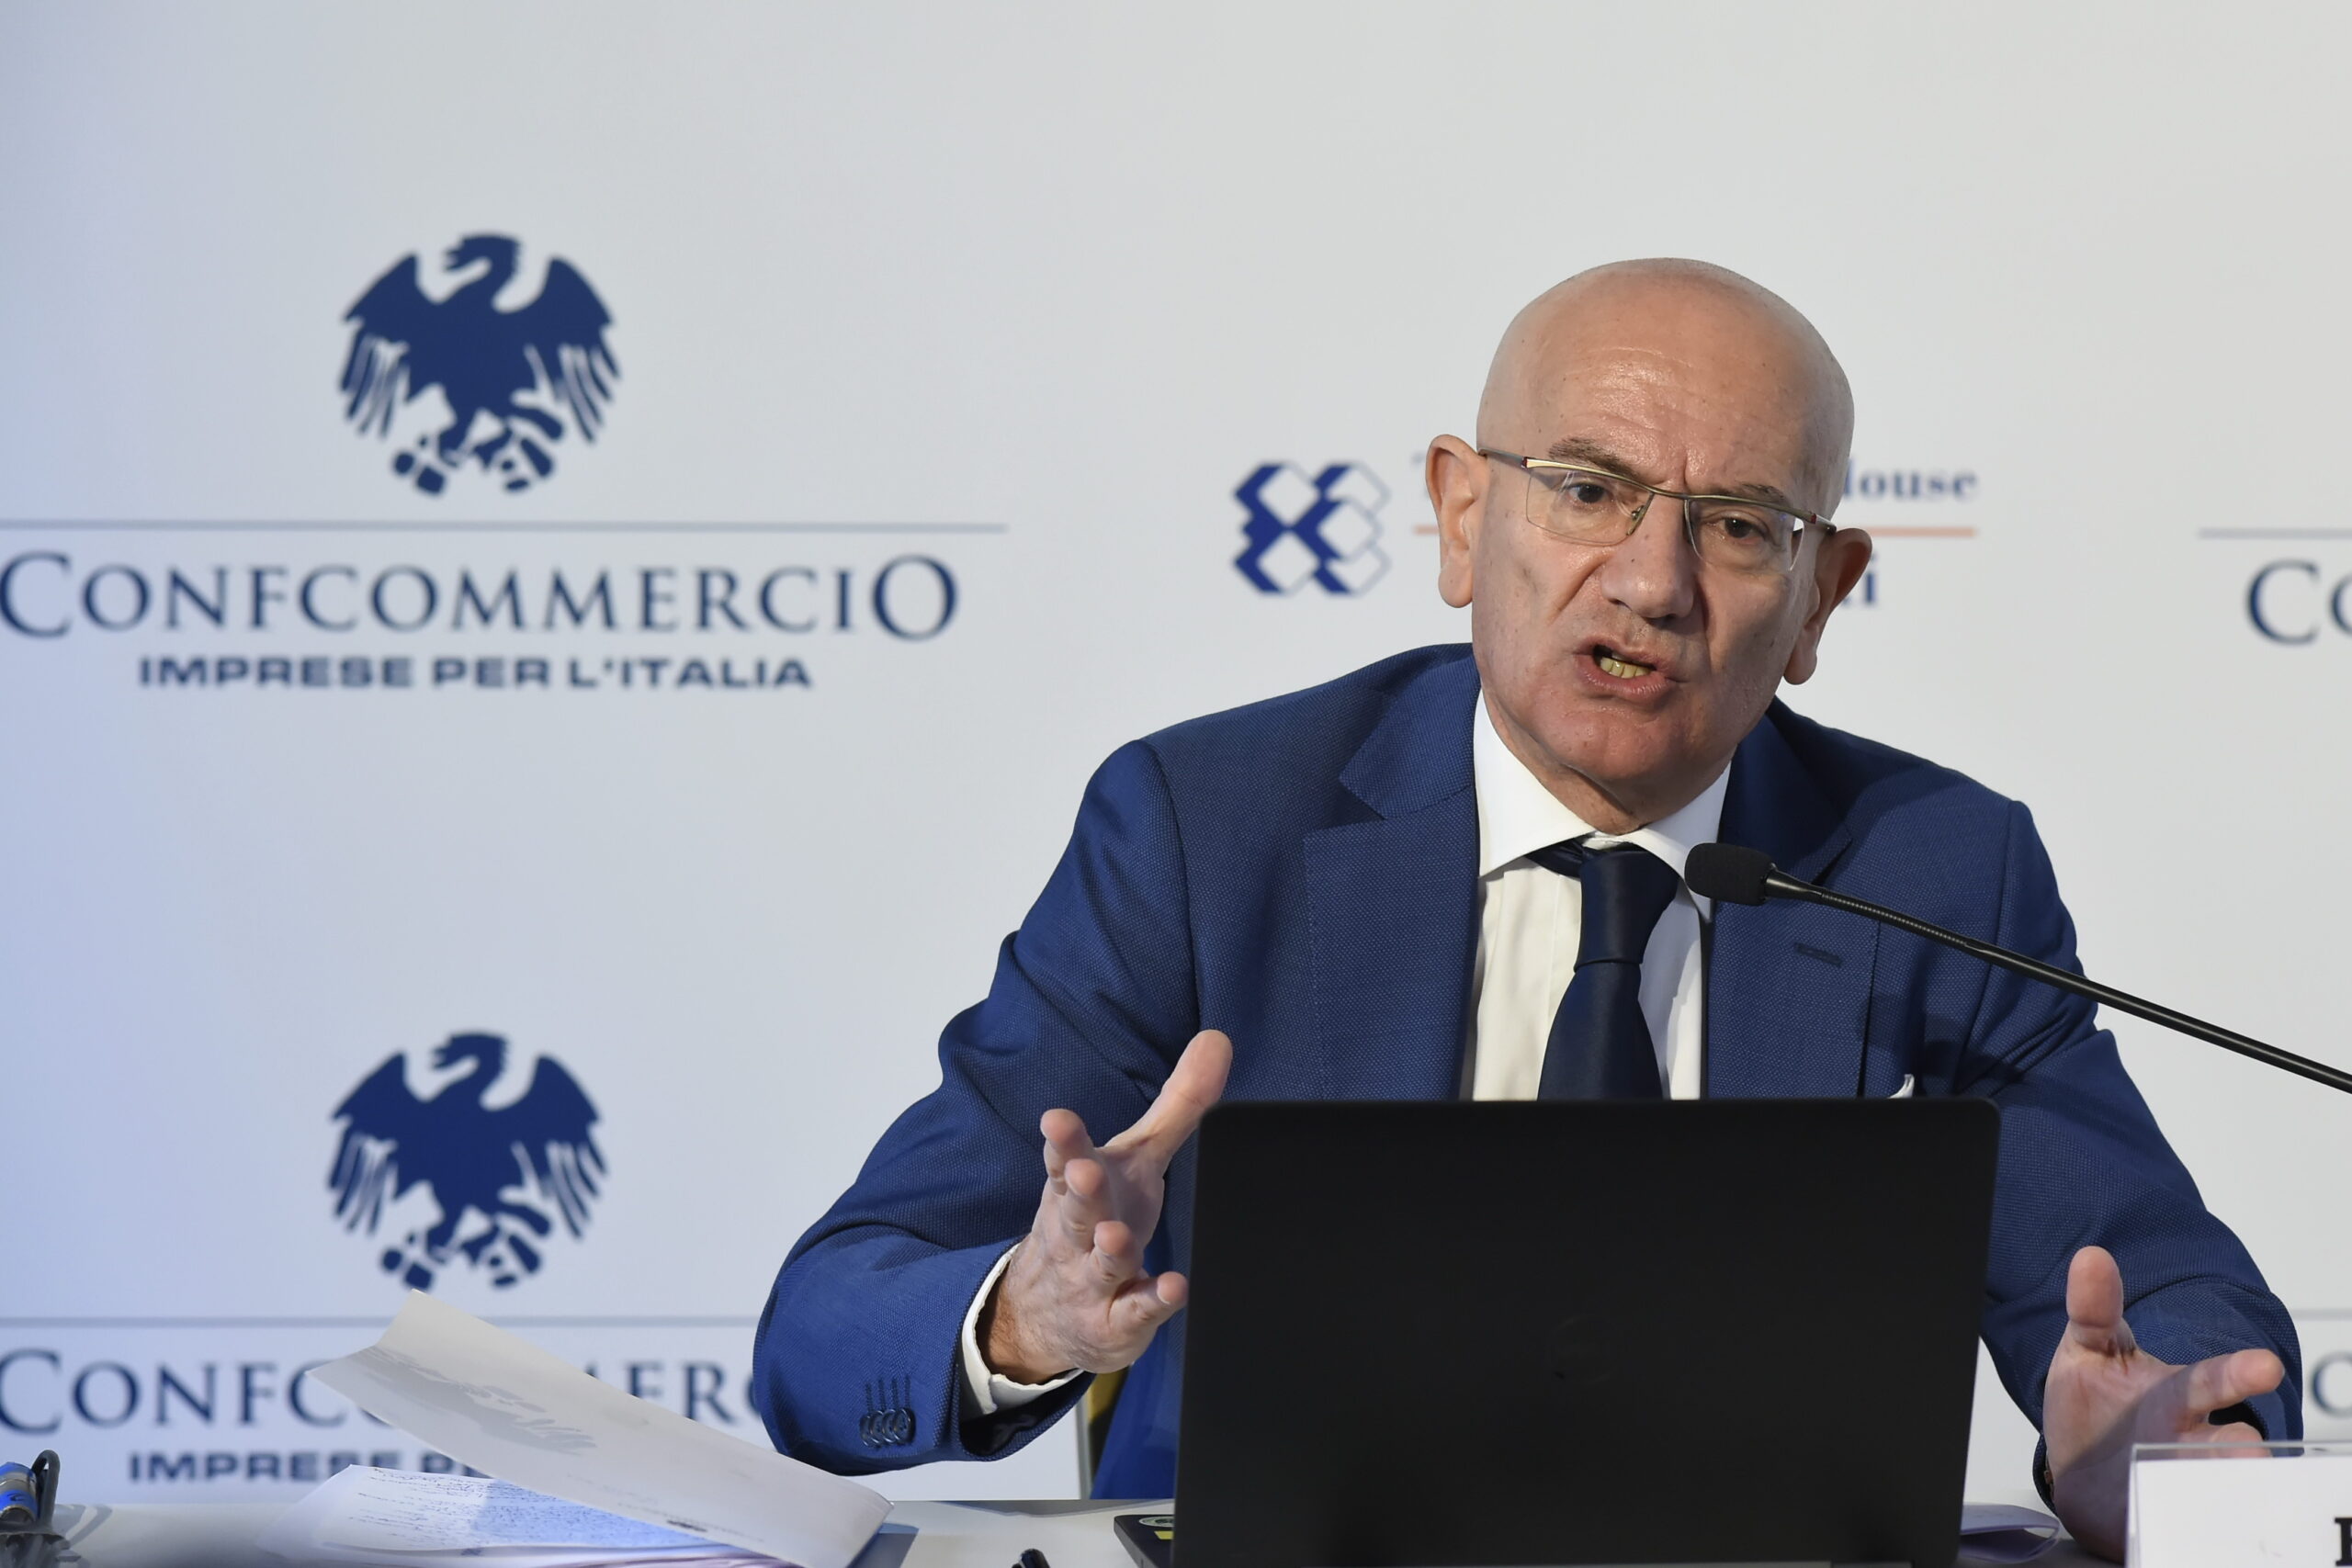 Confcommercio, il direttore Mariano Bella mostra ottimismo: “l’economia rallenta ma è in ottima salute”